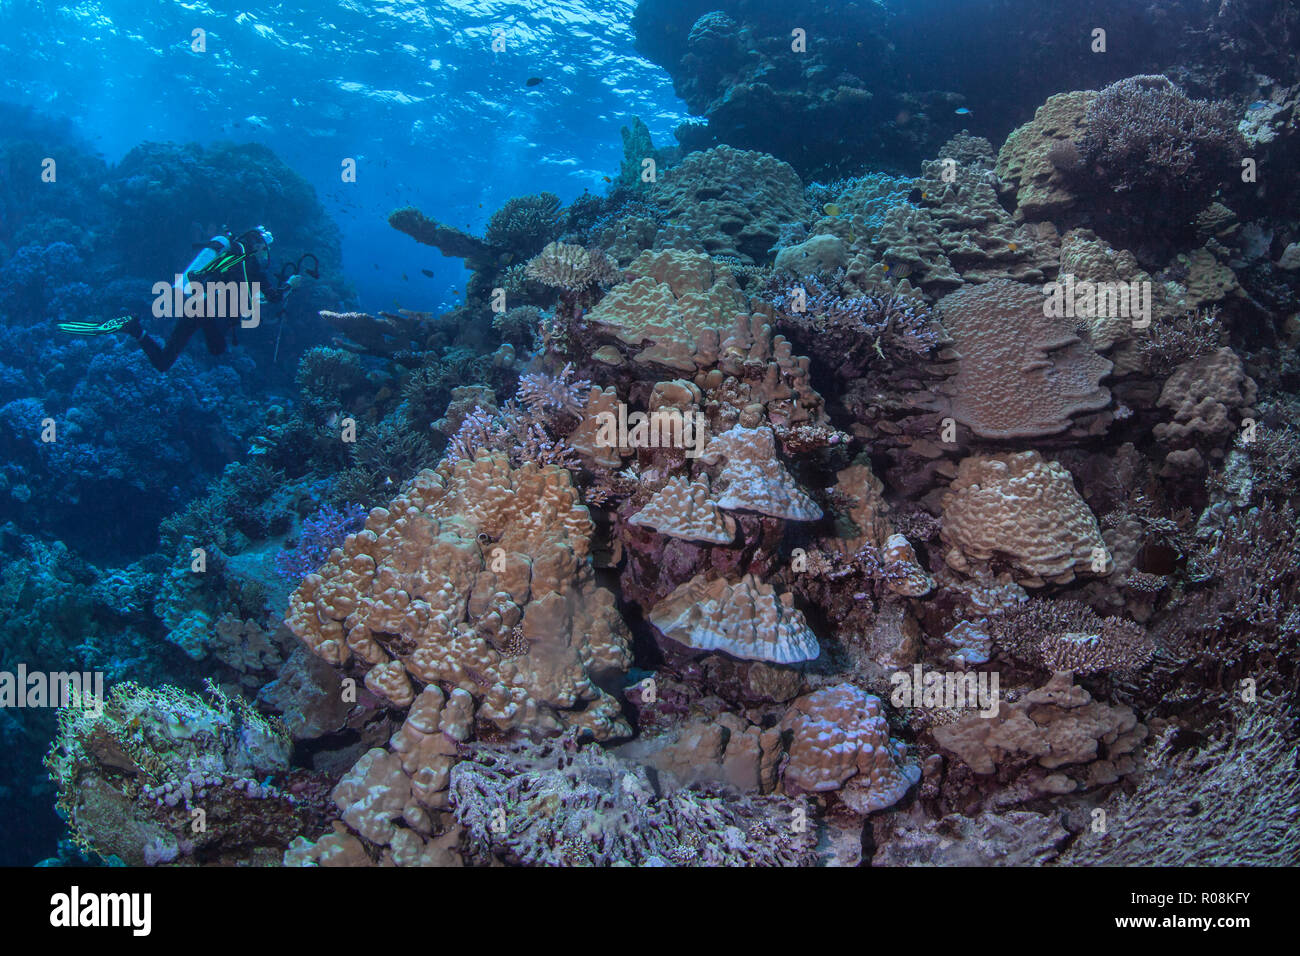 Hembra Scuba Diver, camarógrafo fotografías brillantes Porite coral Garden en la furia cardúmenes región del Mar Rojo. Septiembre, 2018 Foto de stock